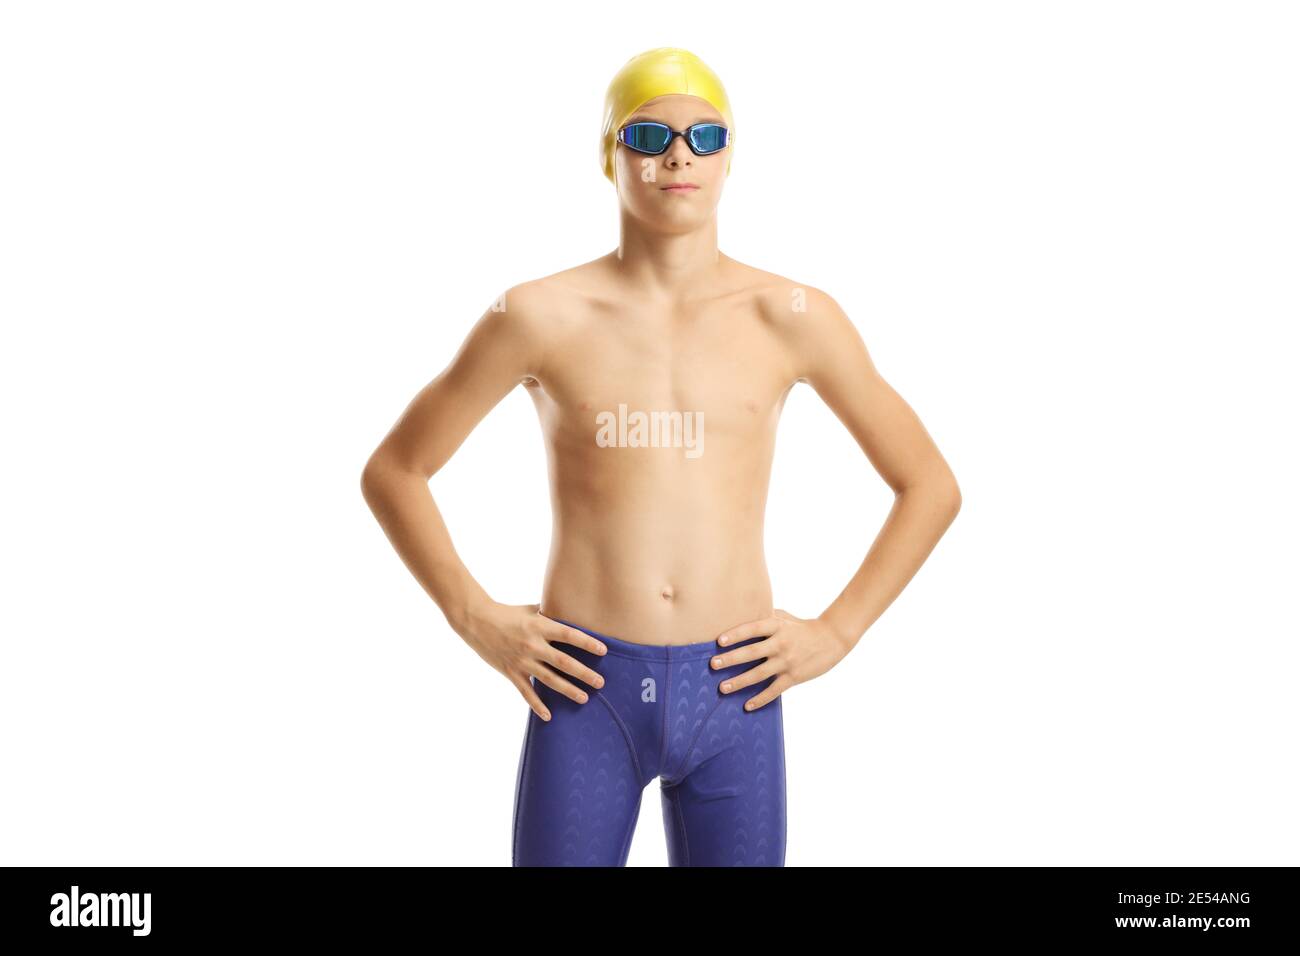 Ragazzo nuotatore in posa isolato su sfondo bianco Foto Stock